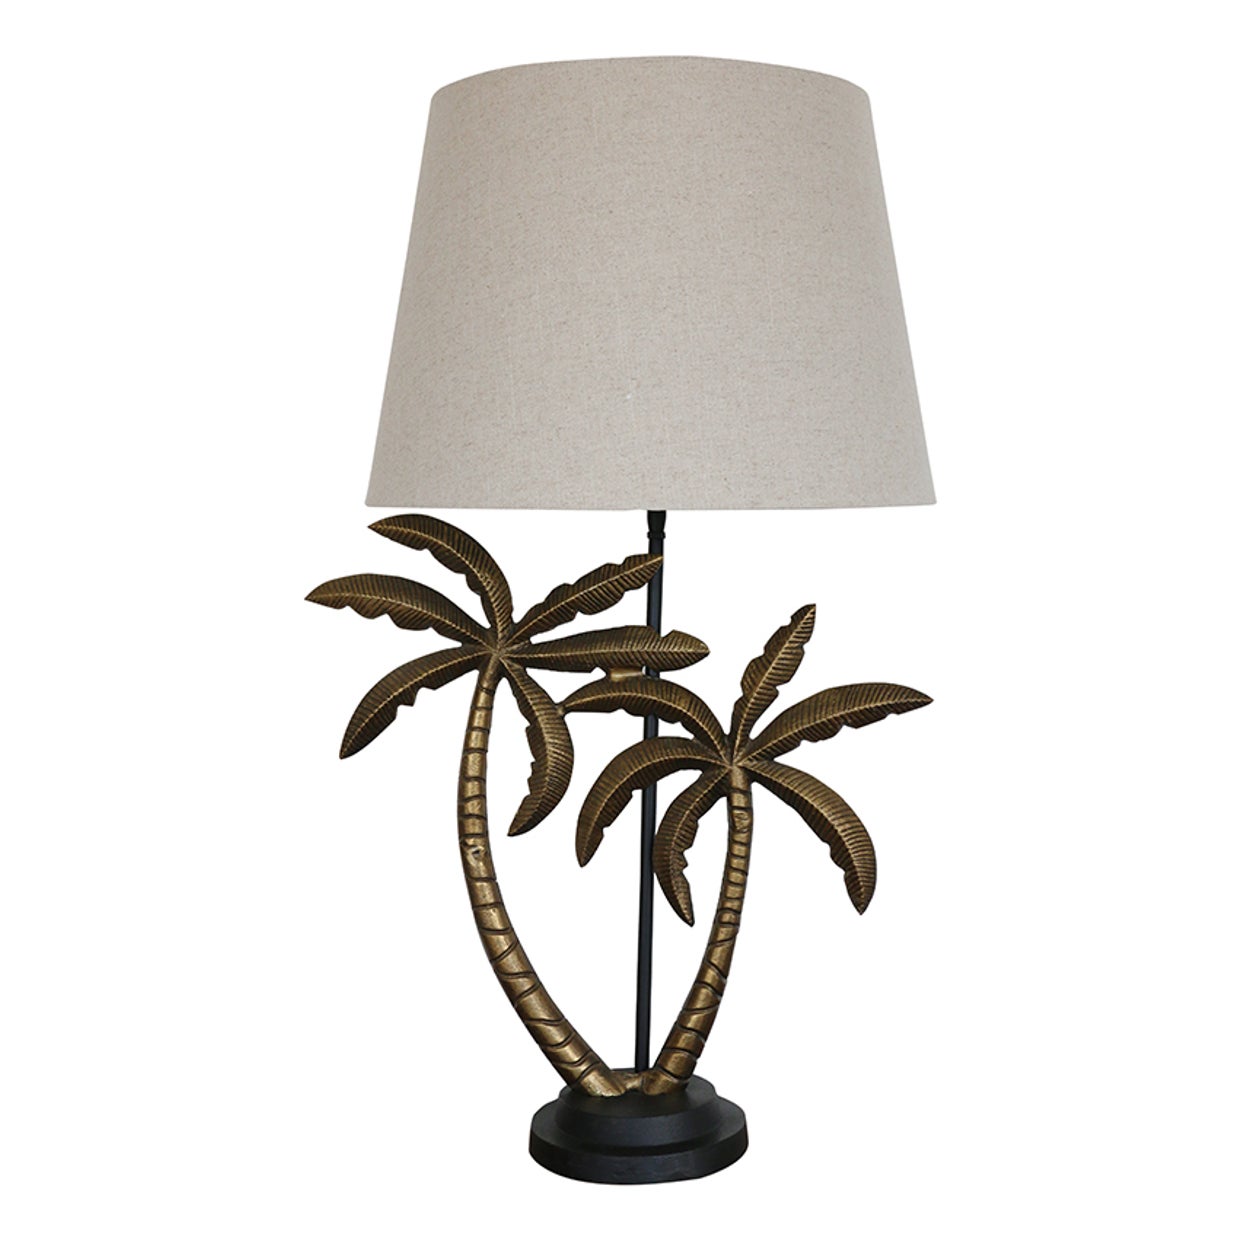 Caribbean Double Palm Lamp Base Brass Antique & Black